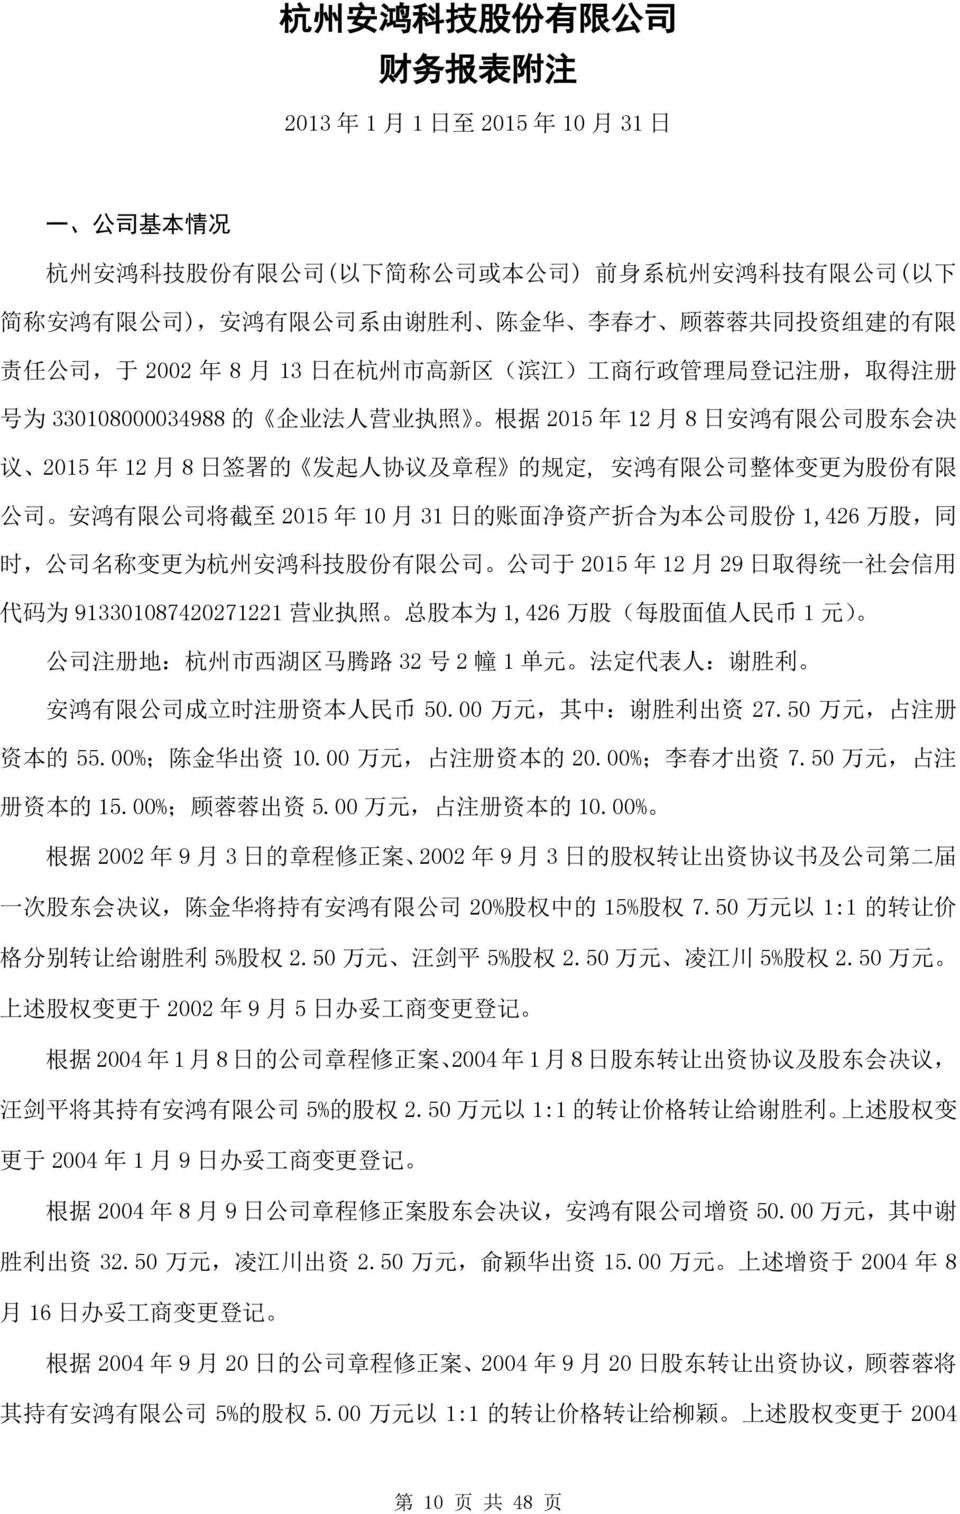 议 2015 年 12 月 8 日 签 署 的 发 起 人 协 议 及 章 程 的 规 定, 安 鸿 有 限 公 司 整 体 变 更 为 股 份 有 限 公 司 安 鸿 有 限 公 司 将 截 至 2015 年 10 月 31 日 的 账 面 净 资 产 折 合 为 本 公 司 股 份 1,426 万 股, 同 时, 公 司 名 称 变 更 为 杭 州 安 鸿 科 技 股 份 有 限 公 司 公